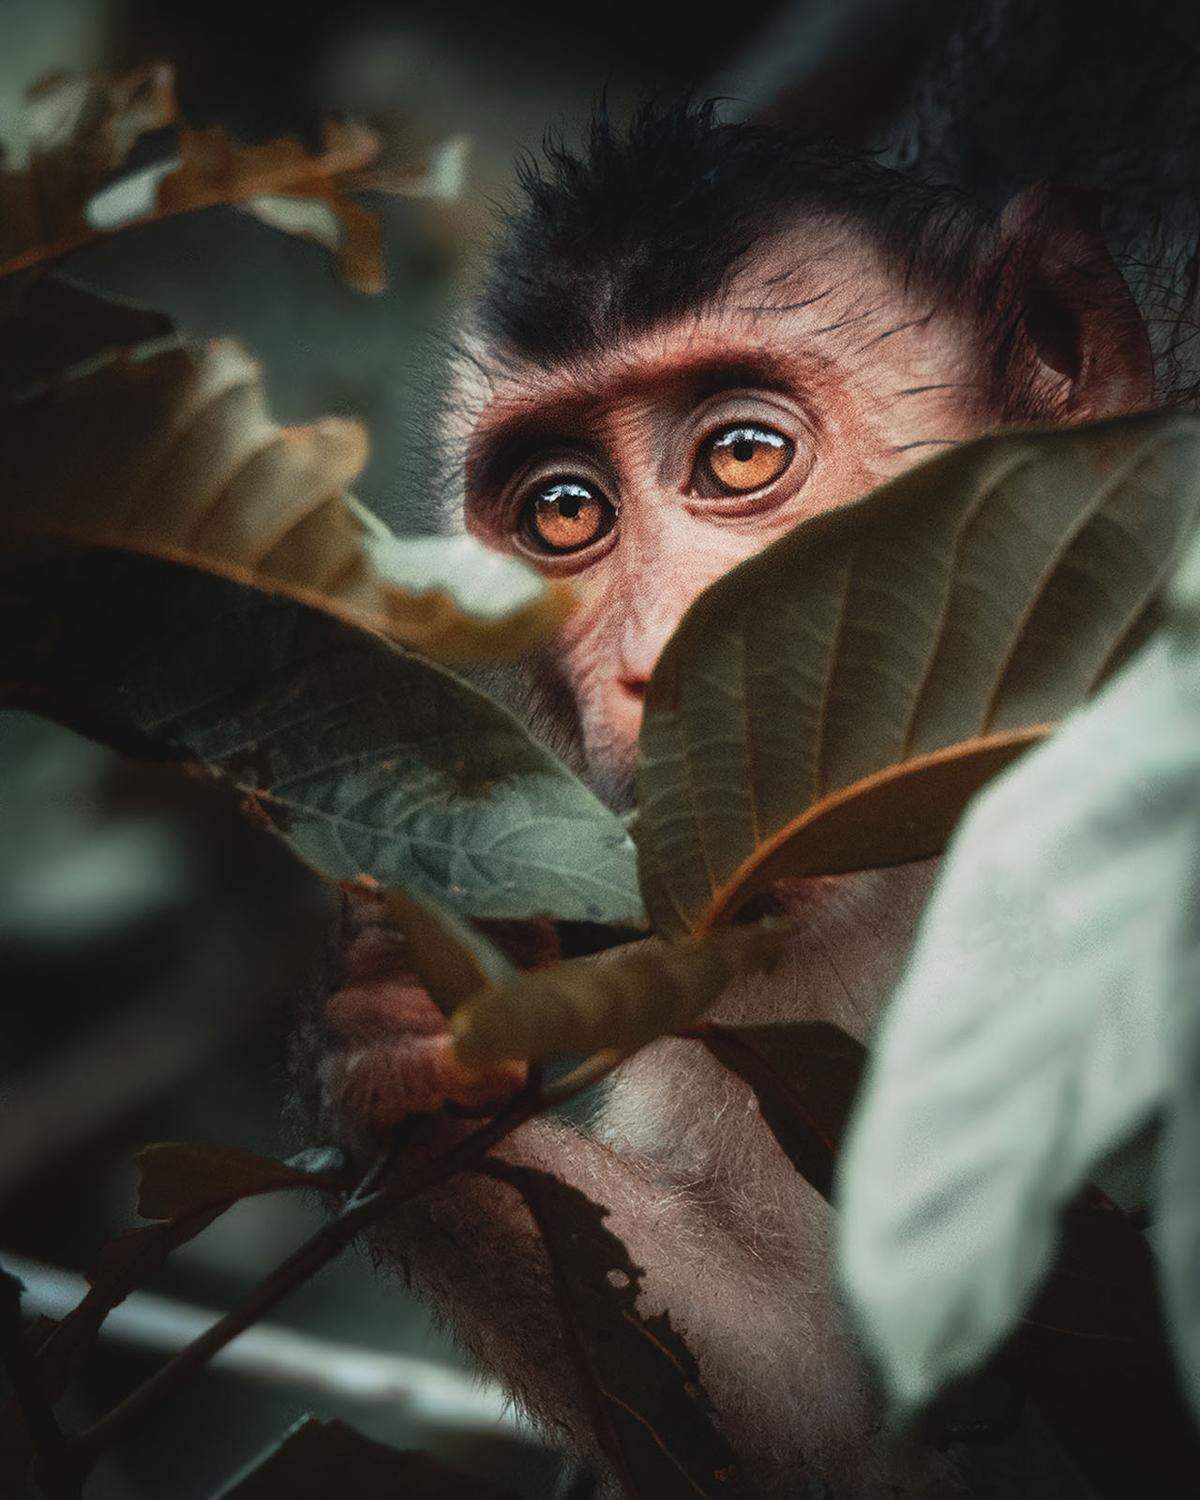 "Wussten Sie, dass Borneo einer der artenreichsten Orte der Erde ist?", fragt ein Schwede. "Ich möchte eine Welt ohne Abholzung." Viele der über 15.000 Pflanzenarten und 400 Tierarten sind nur in Borneo anzufinden. "Es ist so wichtig, Orte wie diesen zu schützen und sicherzustellen, dass sie noch für kommende Generationen existieren."